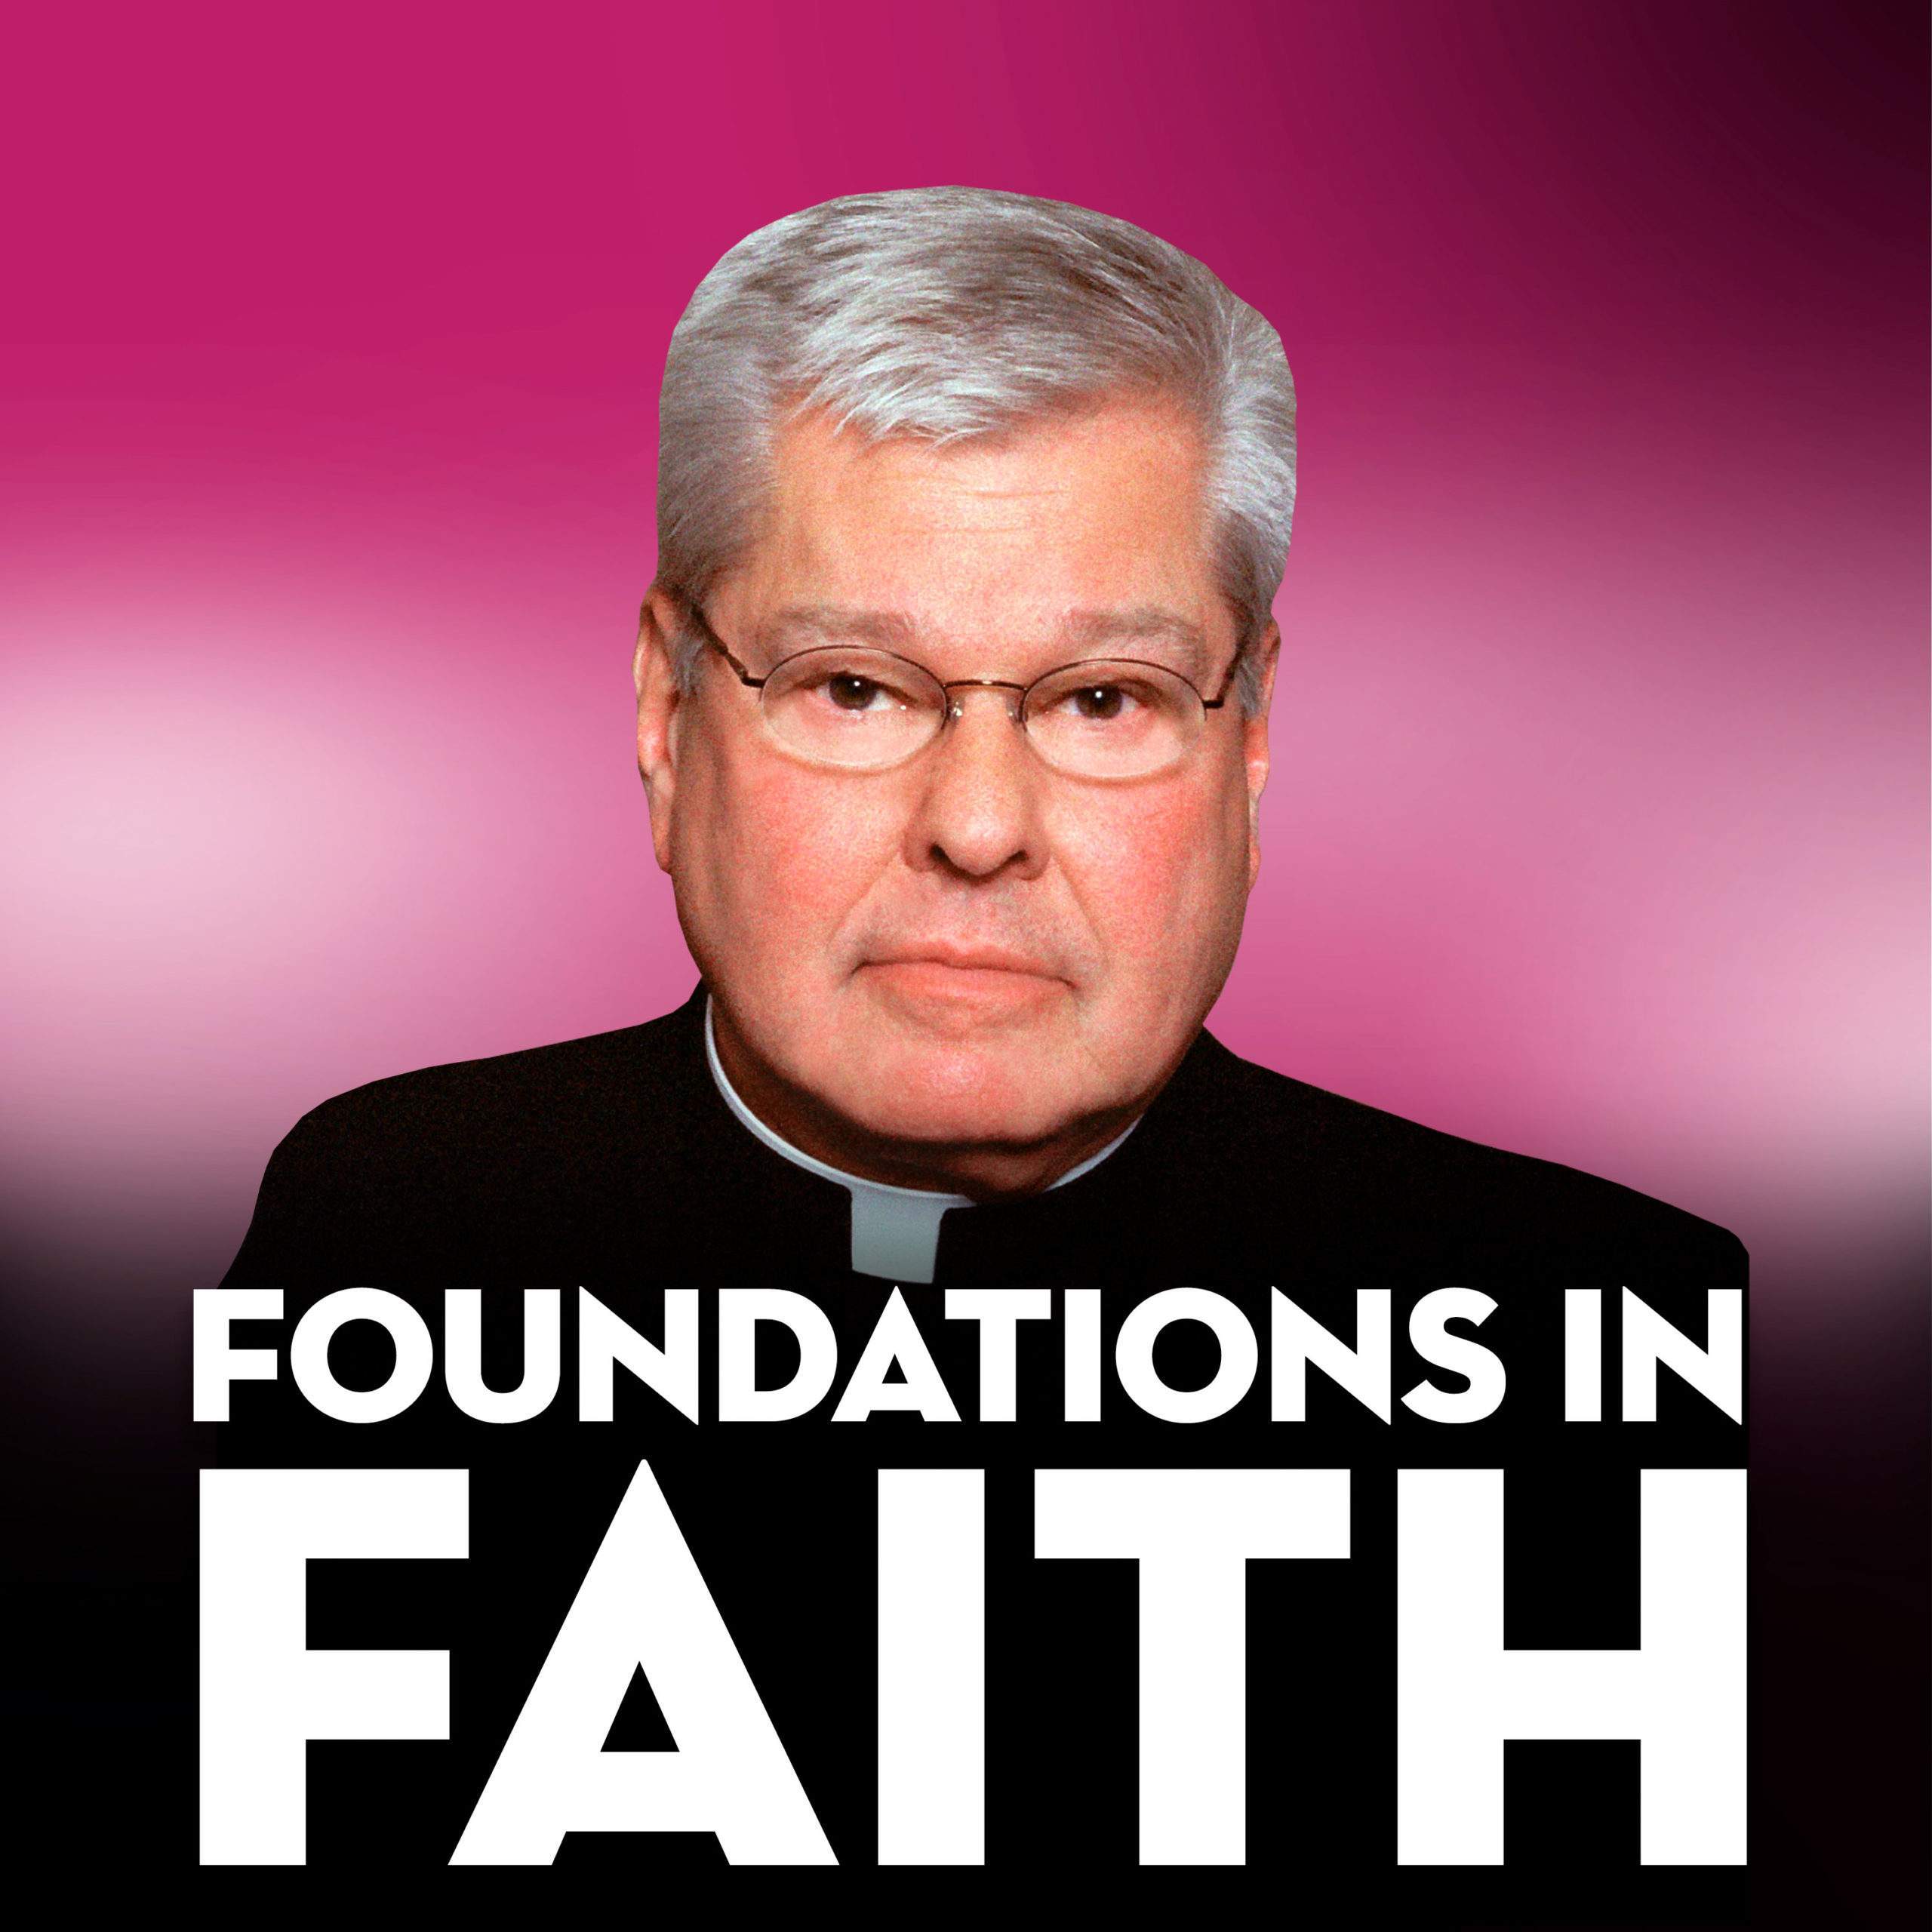 11/27/22-Foundations In Faith- Matthew 24:37-44